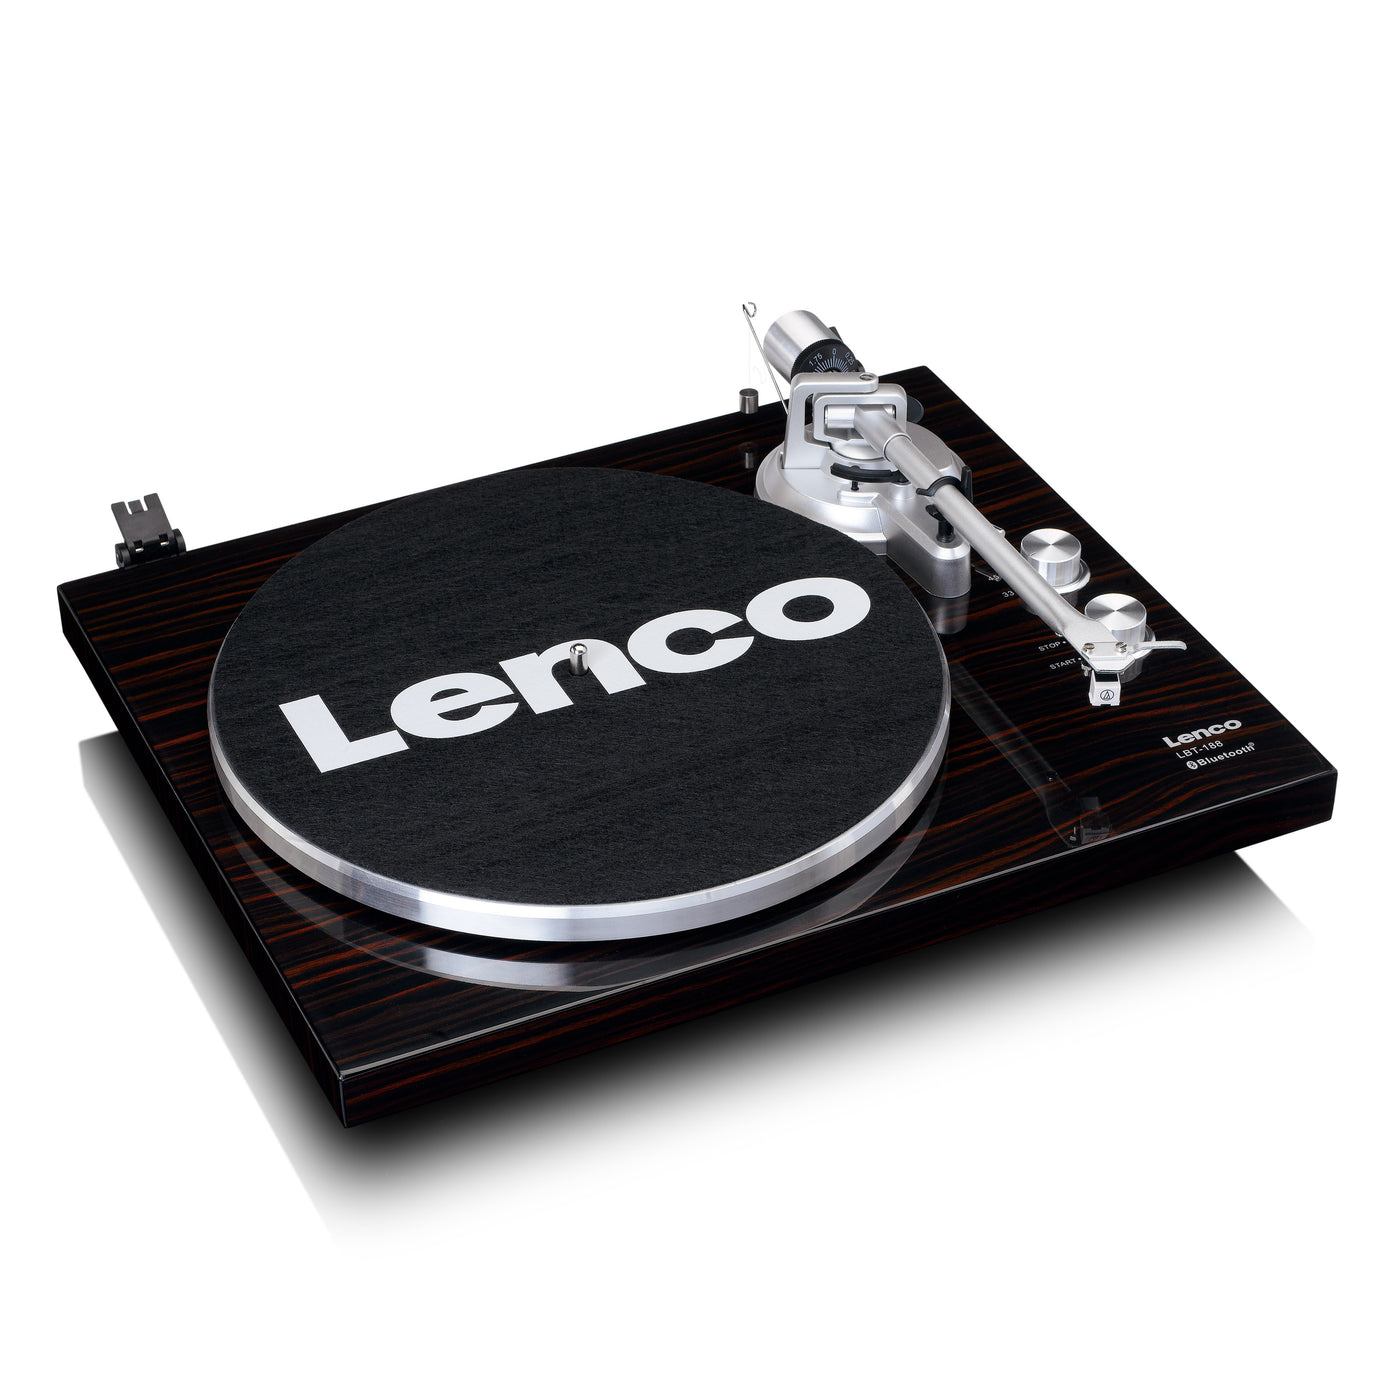 Lenco LBT-188WA - Plattenspieler mit Riemenantrieb, Bluetooth® und Anti-Skating, dunkelbraun